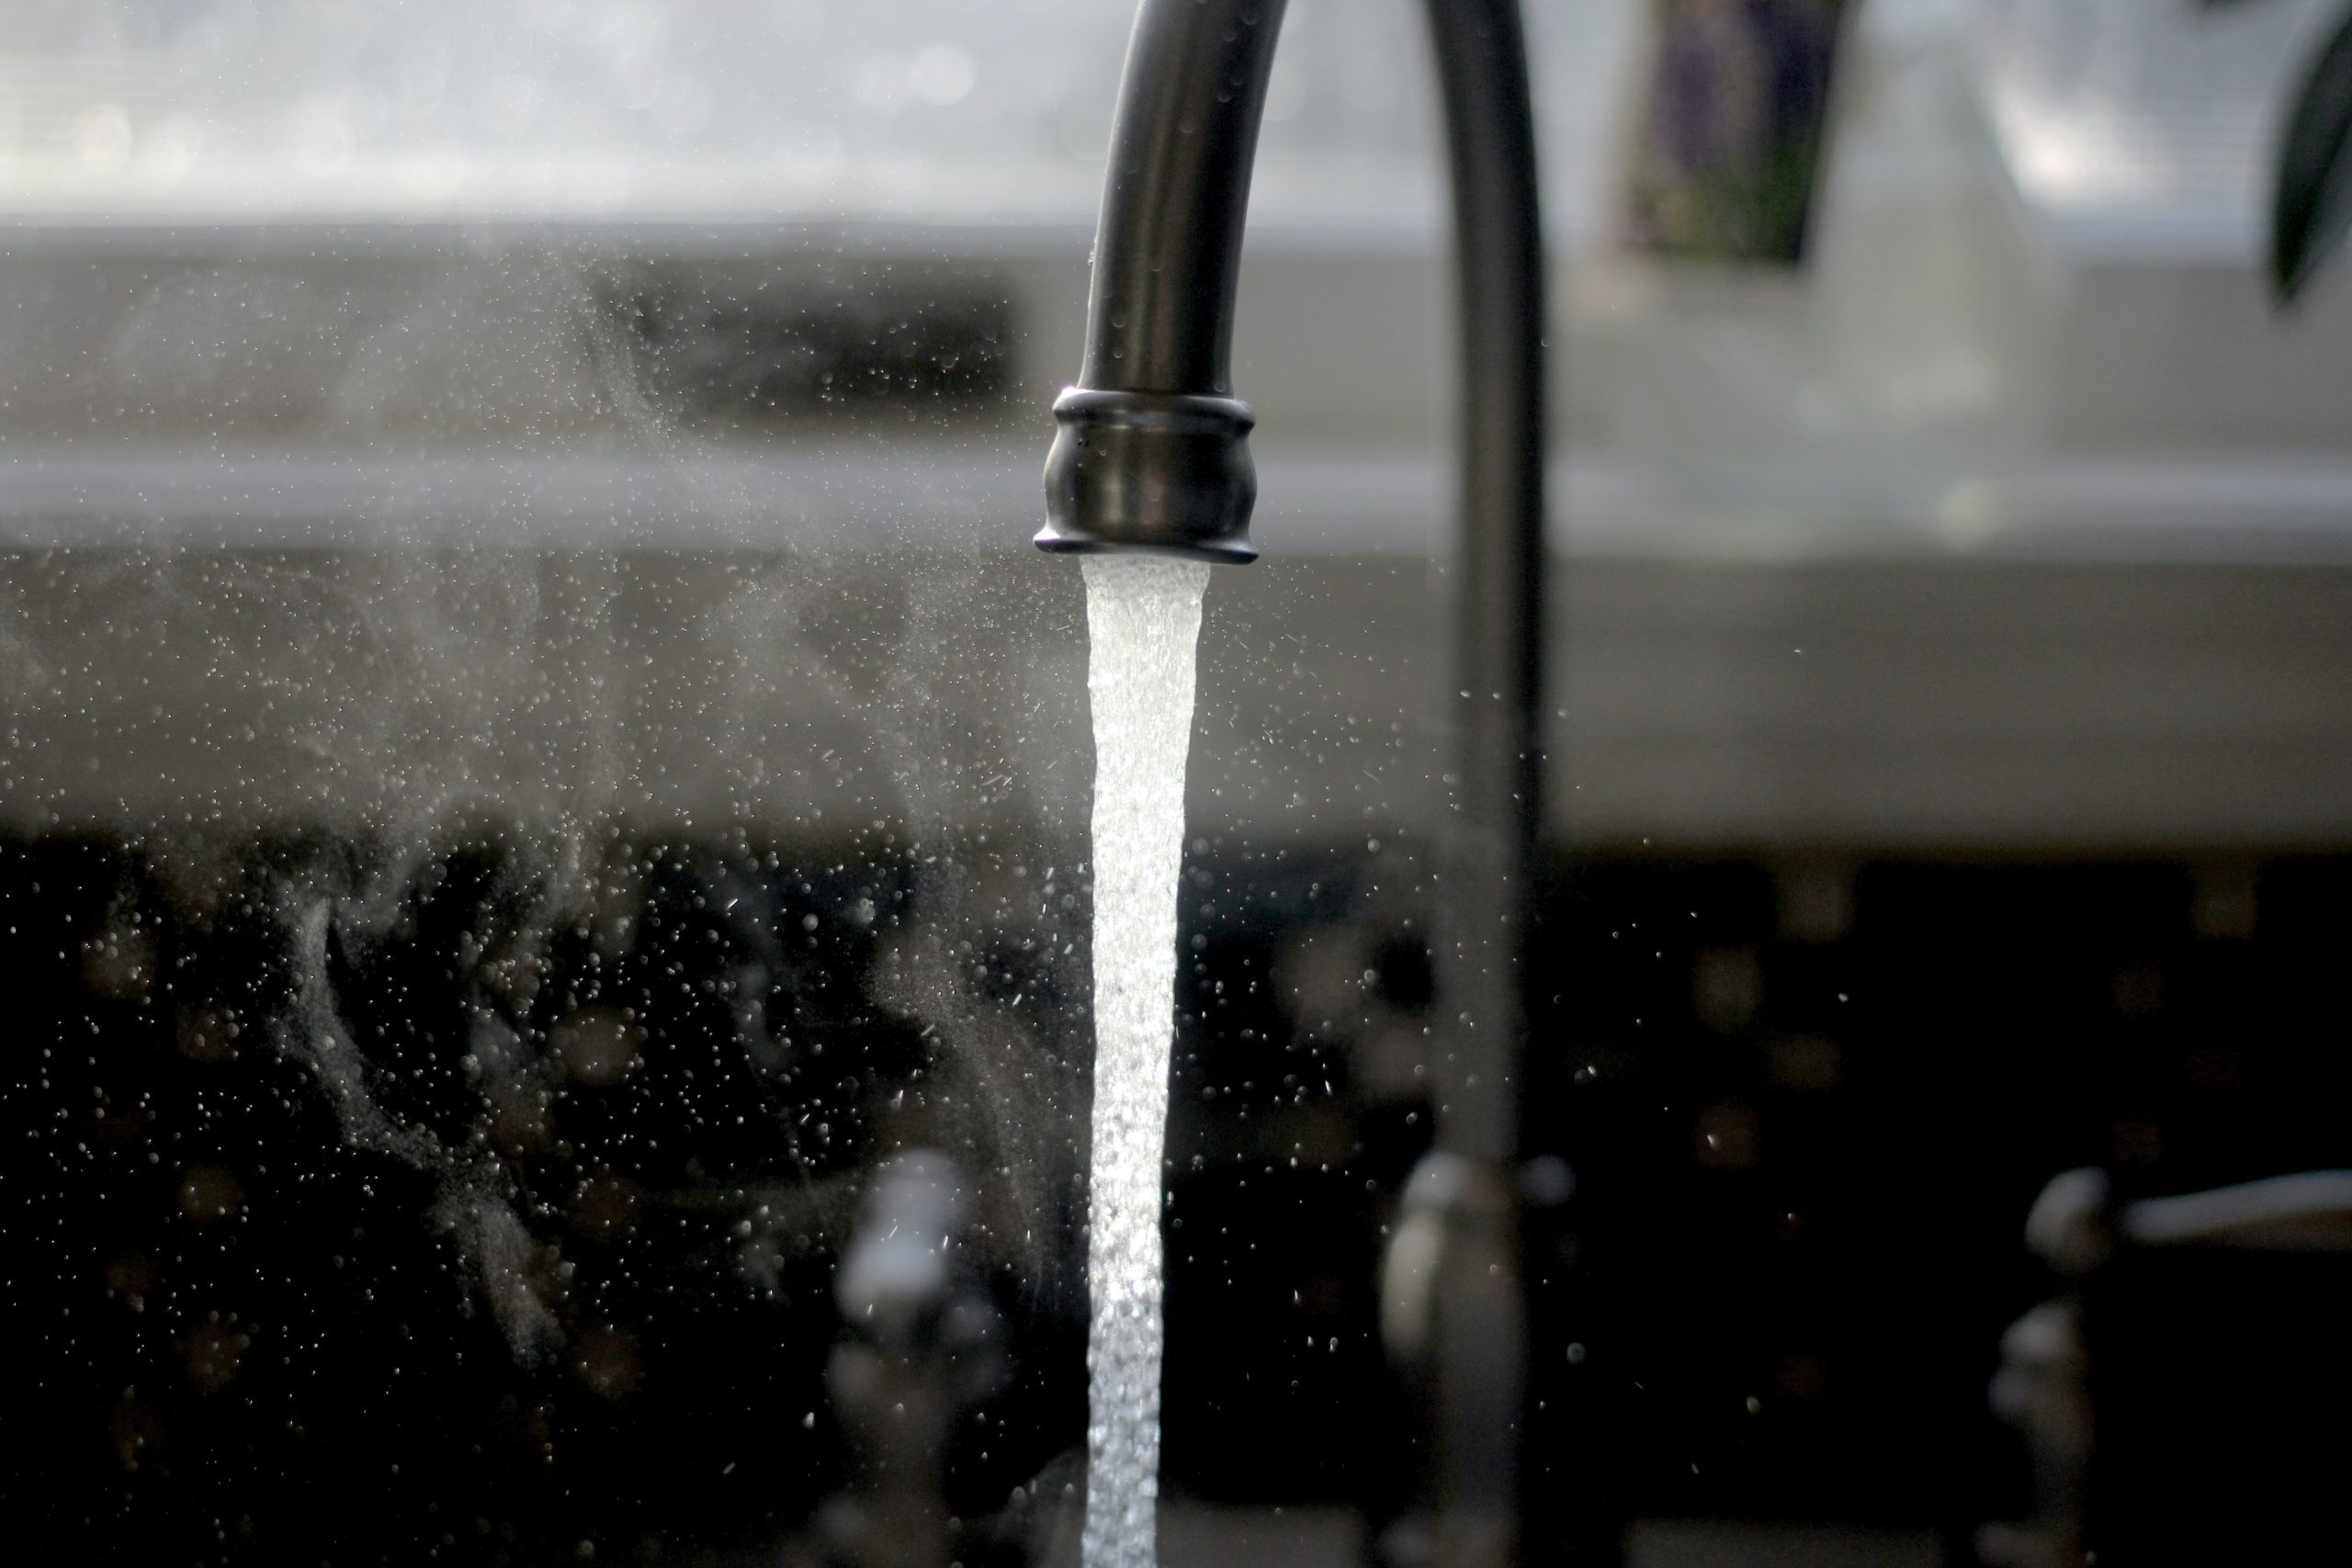 Les économies d'eau sont au bout du robinet